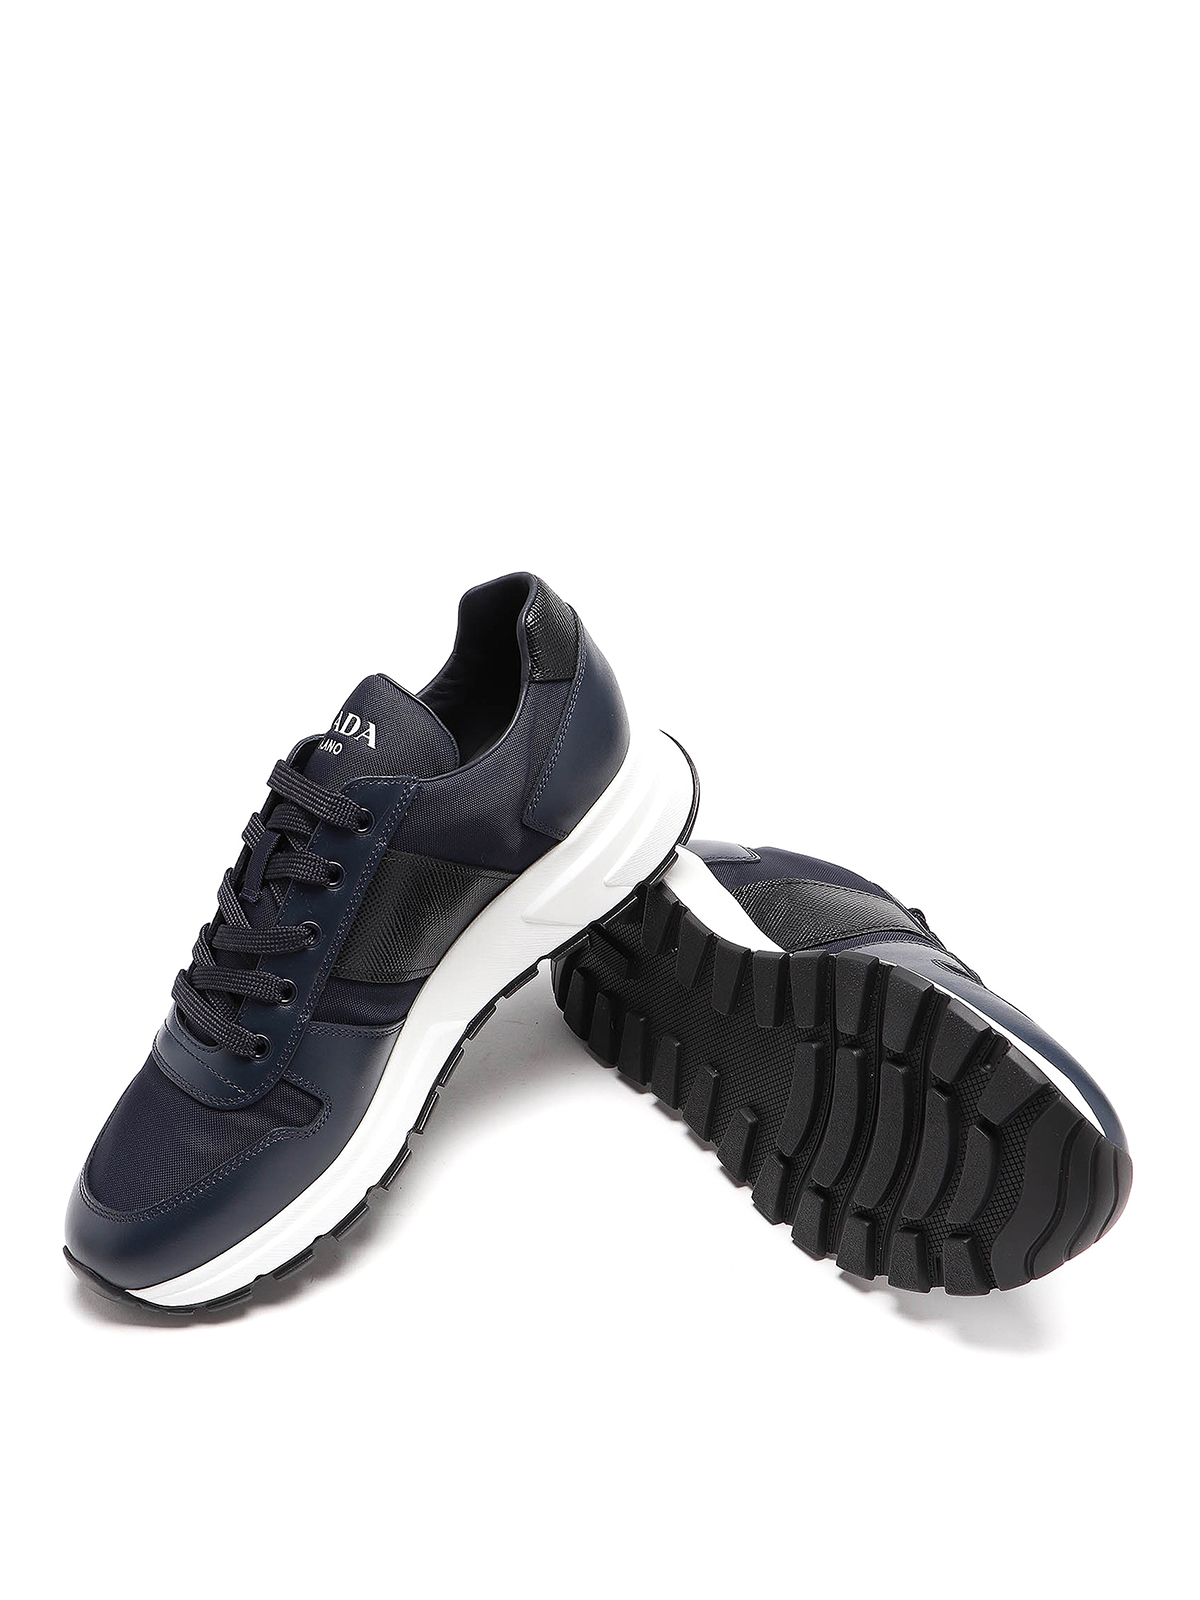 Prada - Prax 01 sneakers - trainers 